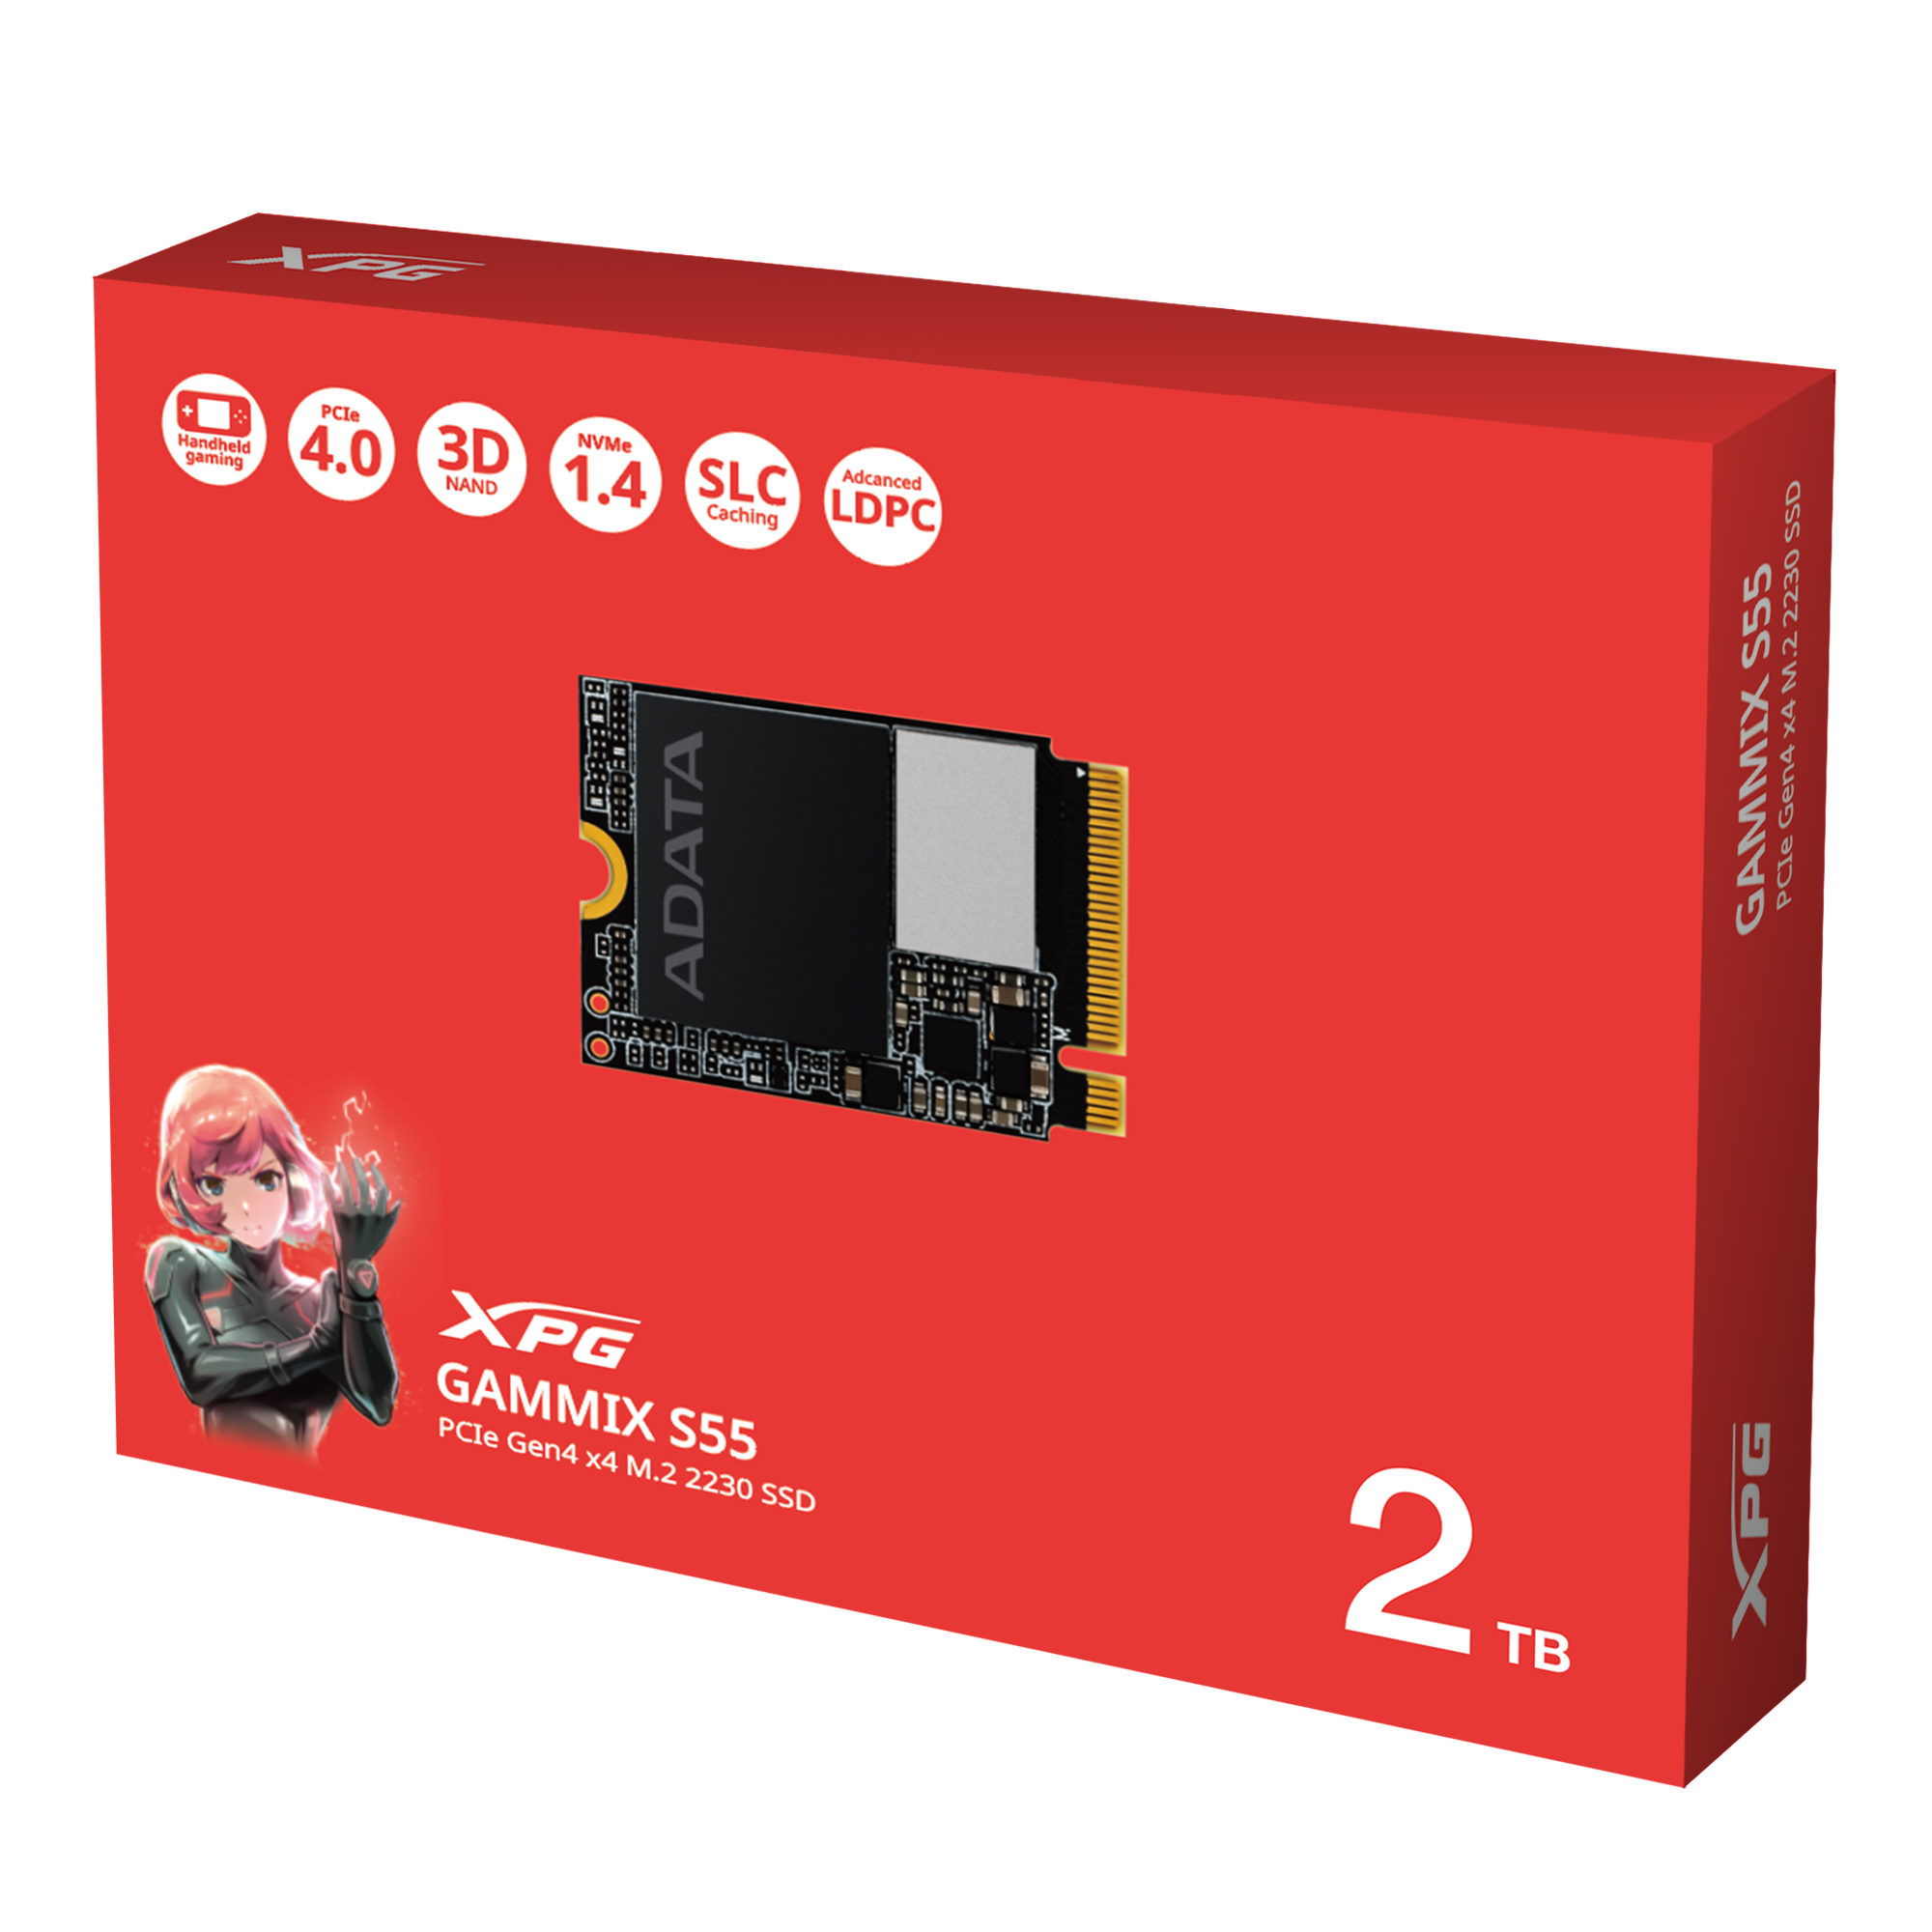 ADATA GAMMIX S55 | PCIe Gen4 x4 M.2 SSD